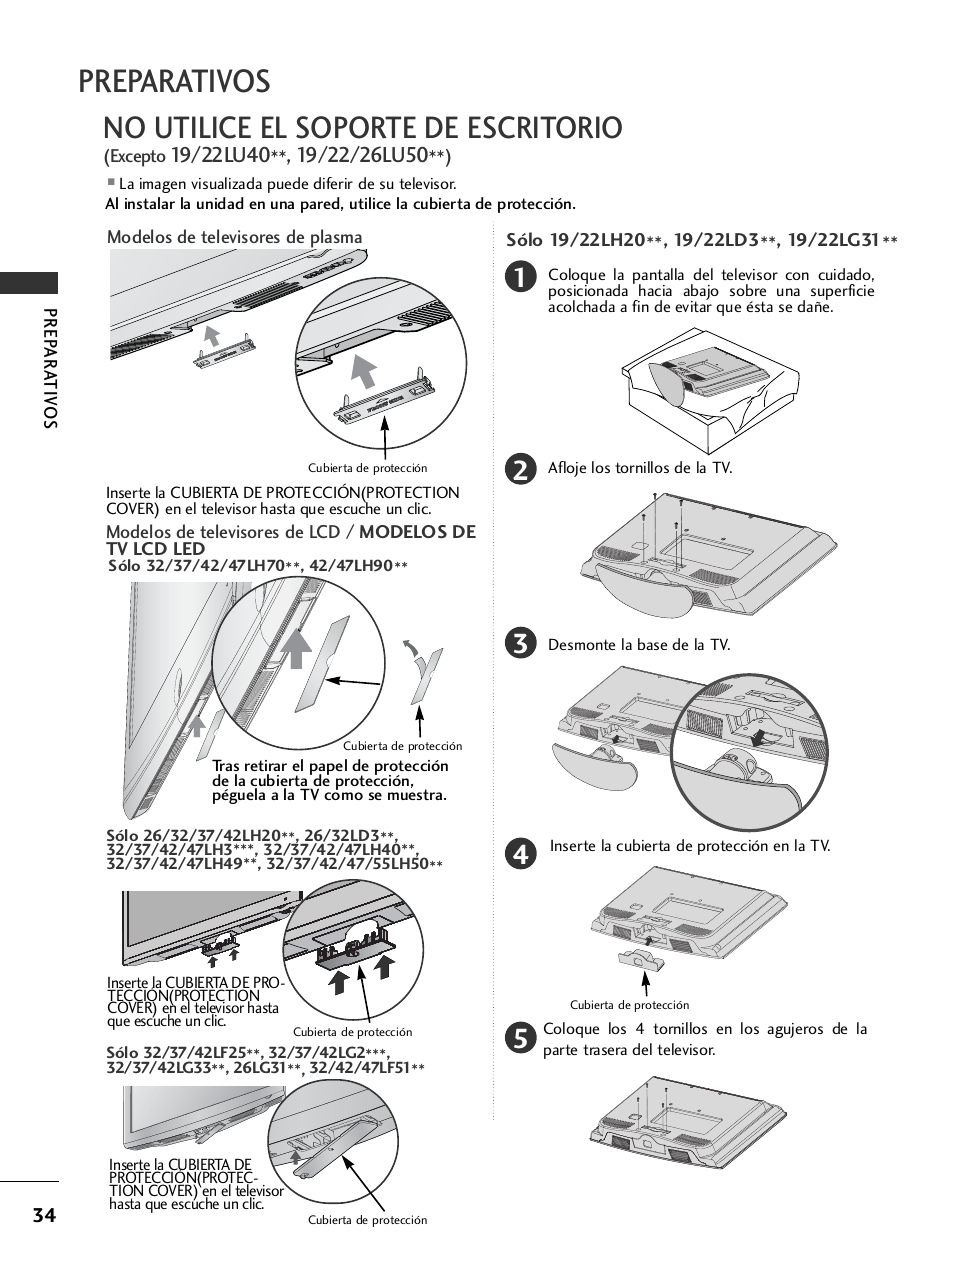 No utilice el soporte de escritorio, Preparativos | LG 32LH40 Manual del usuario | Página 36 / 180